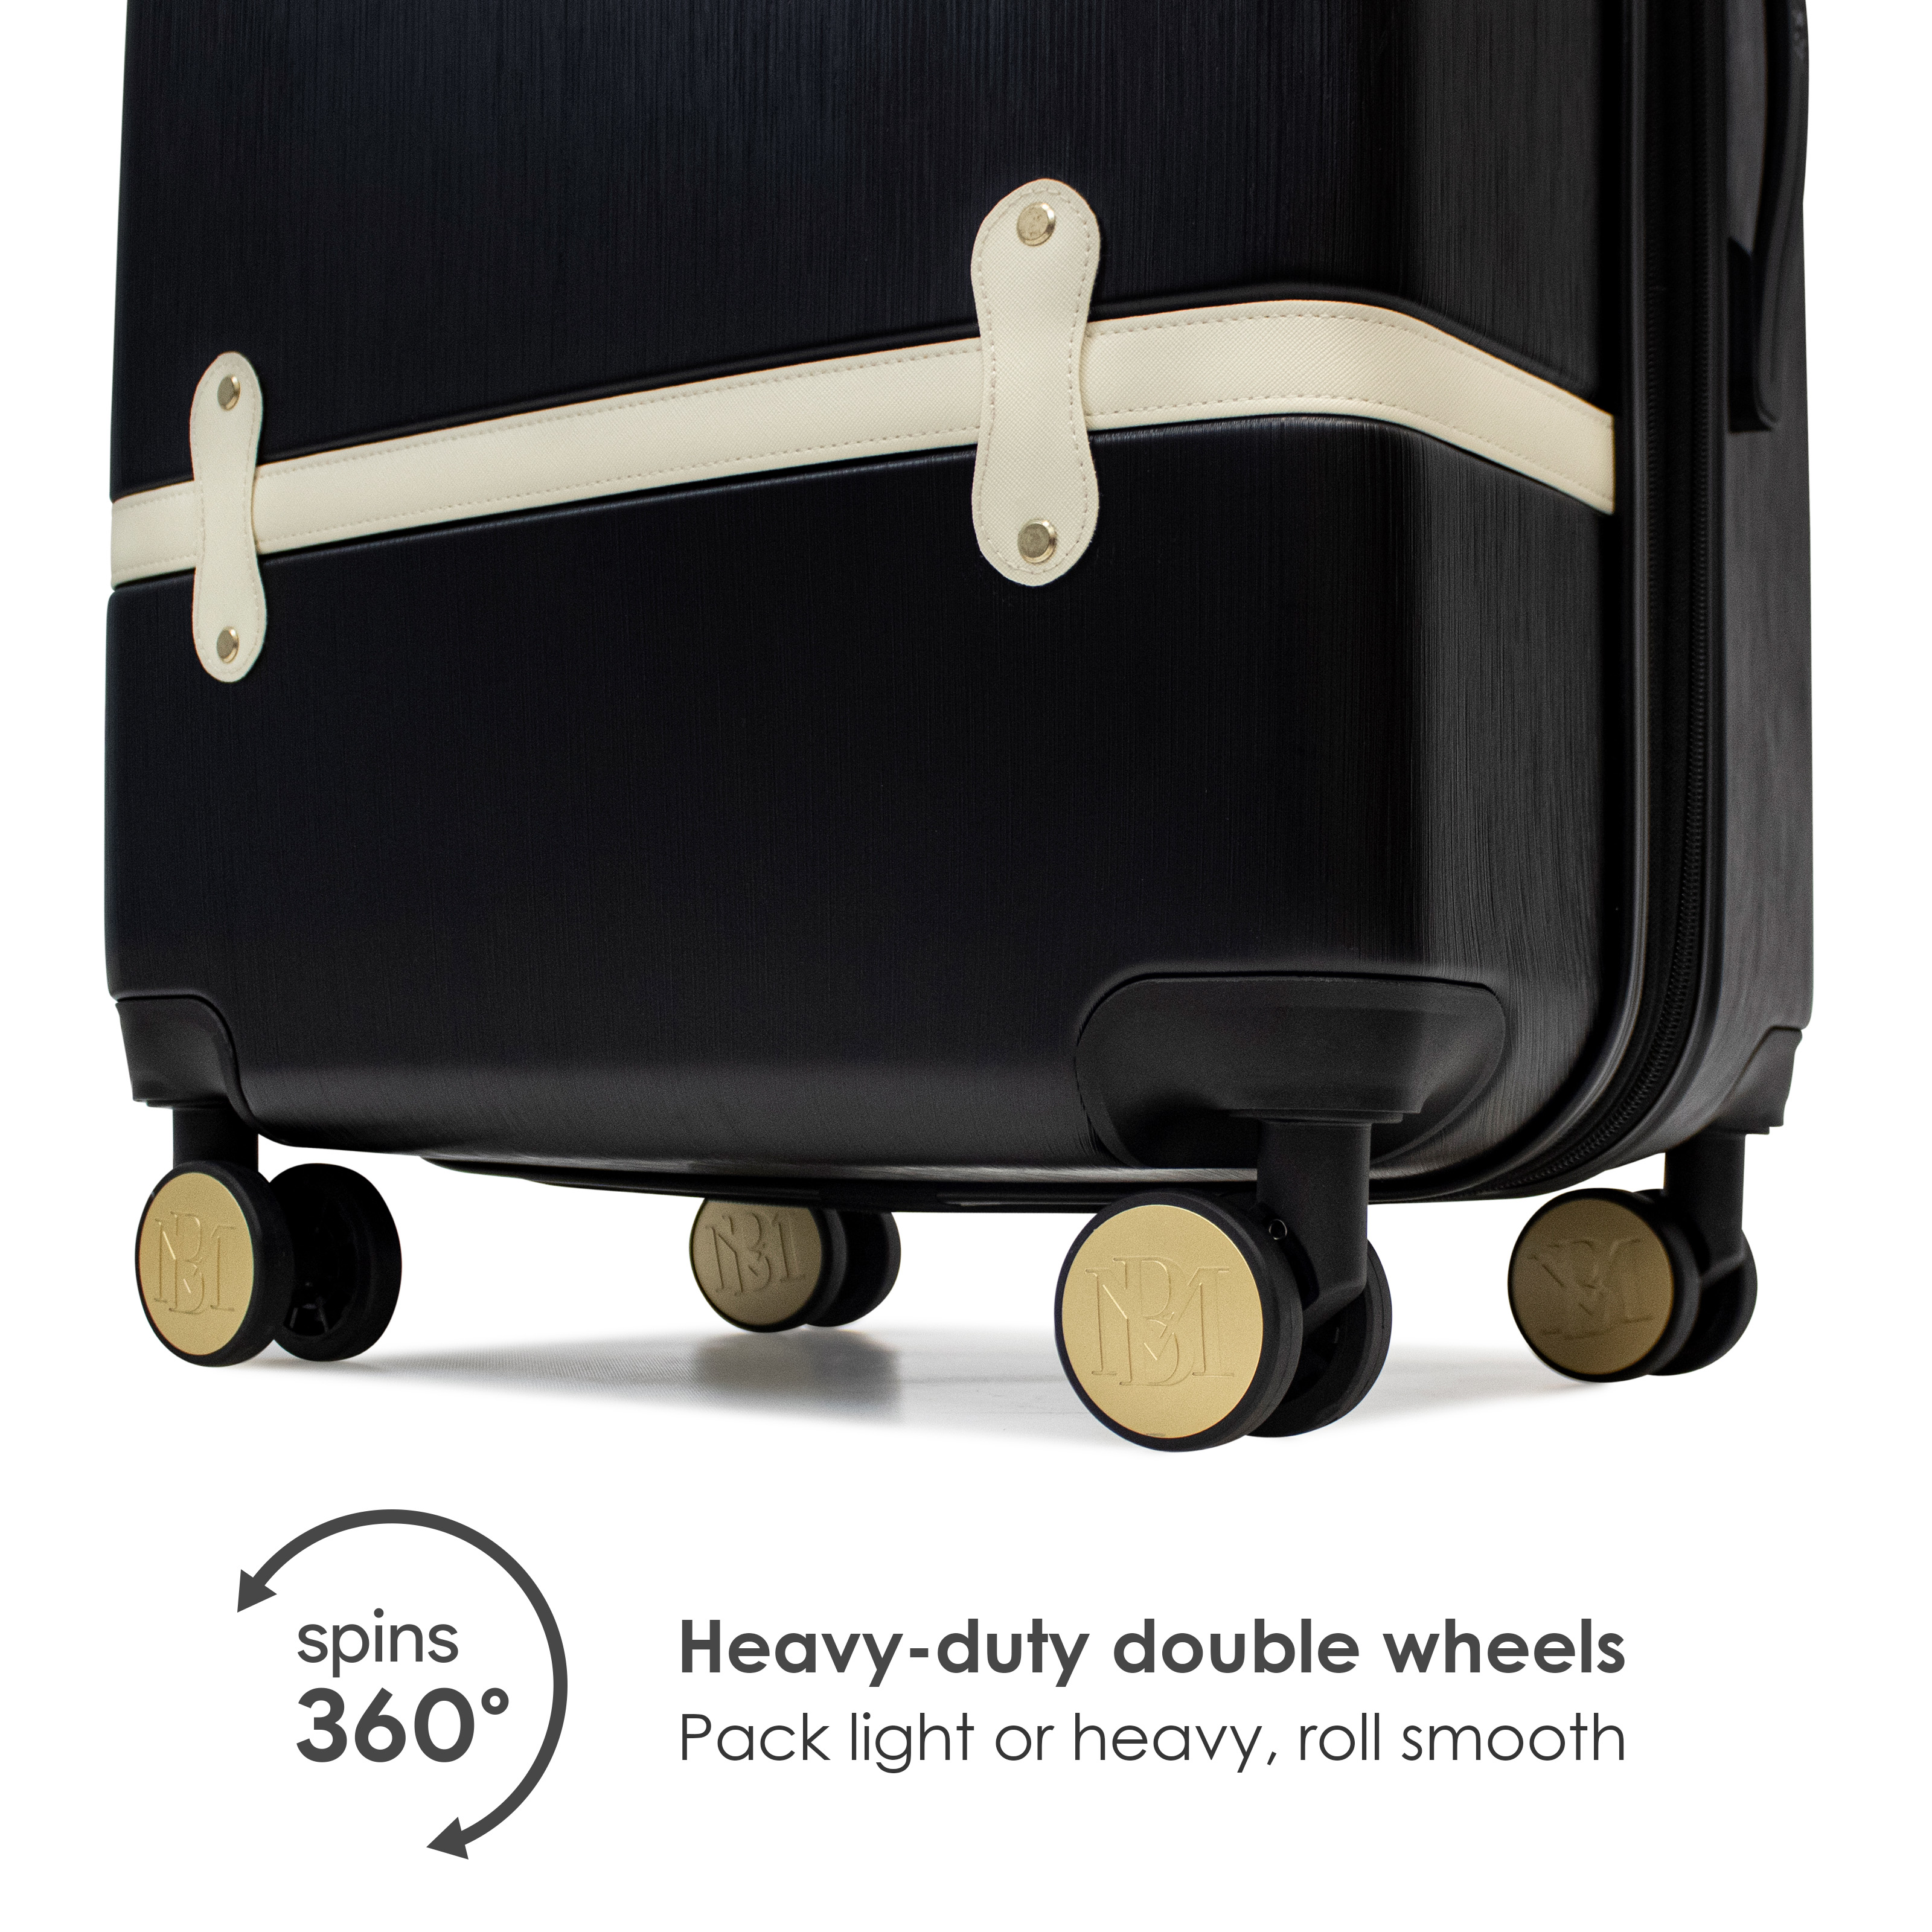 BADGLEY MISCHKA Grace 3 Piece Expandable Retro Luggage Set (Black) - image 3 of 3